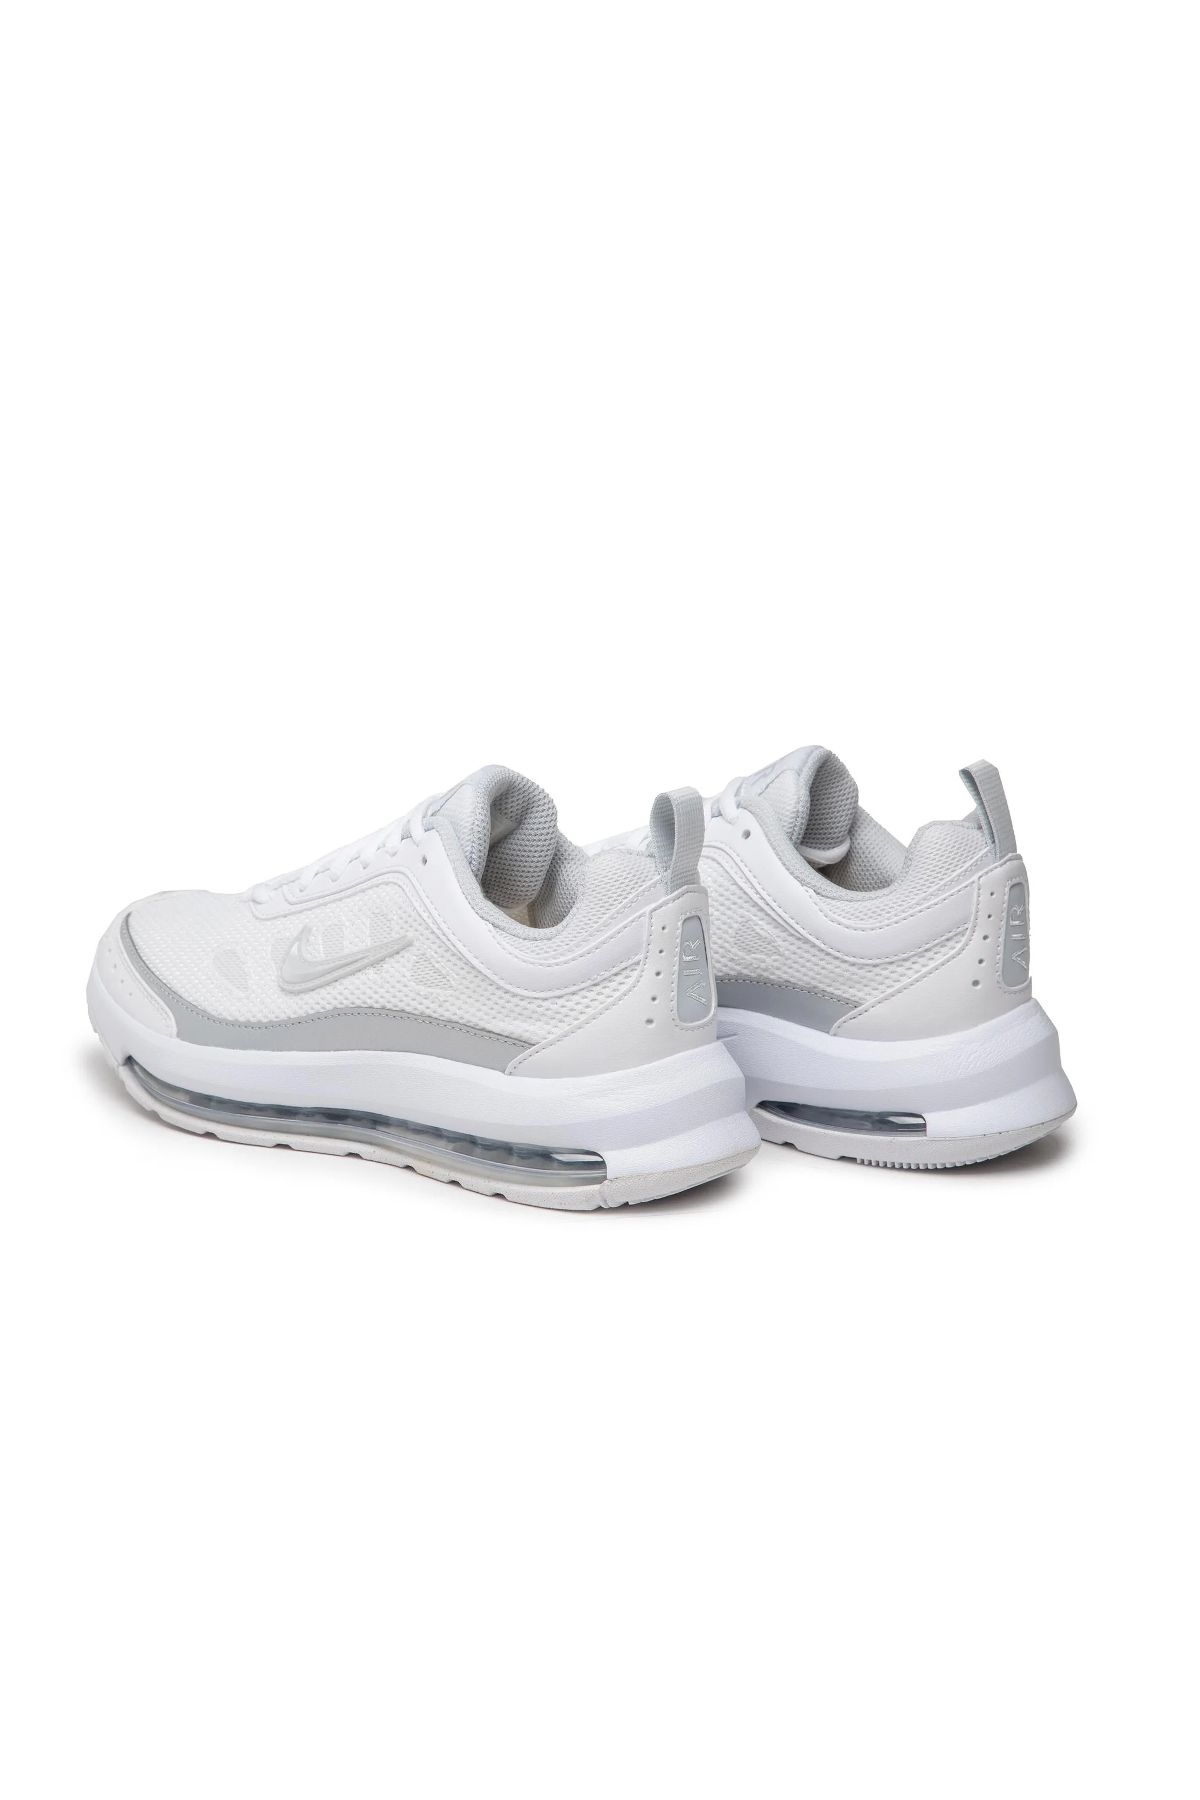 Nike Wmns Aır Max Ap Kadın Beyaz Günlük Ayakkabı - Cu4870-102